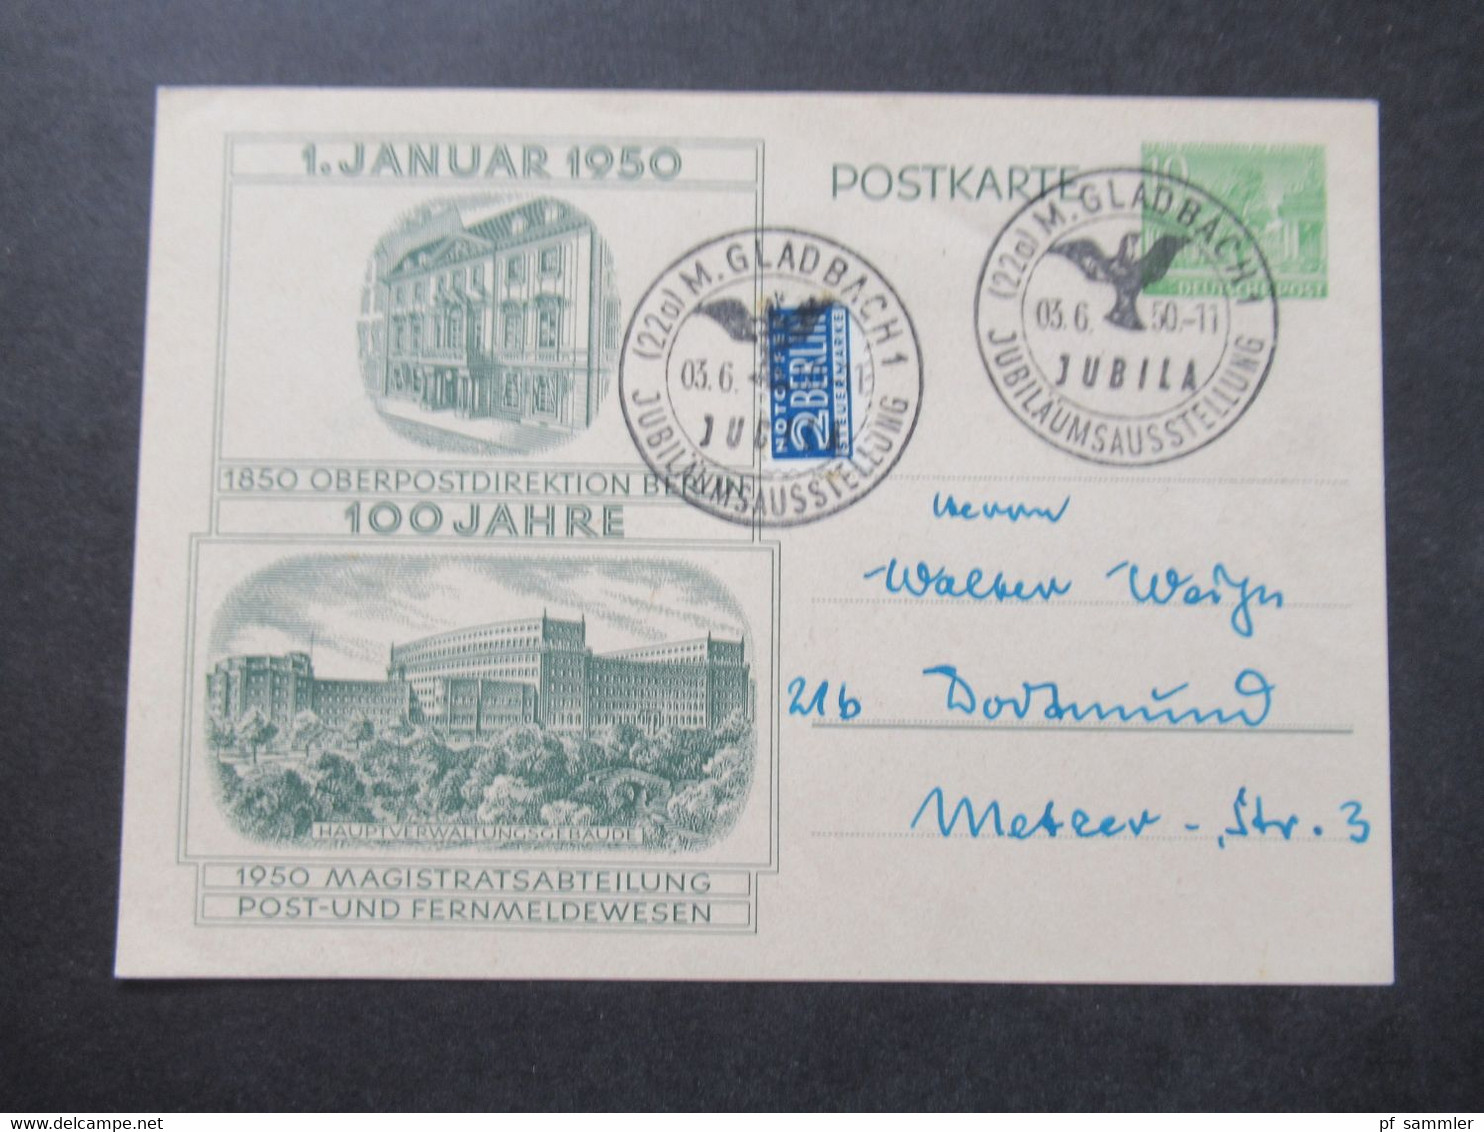 Berlin (West) 1950 Sonderpostkarte 100 Jahre Oberpostdirektion Berlin P 11 Mit Notopfer Und SSt M-Gladbach Jubila - Cartes Postales - Oblitérées